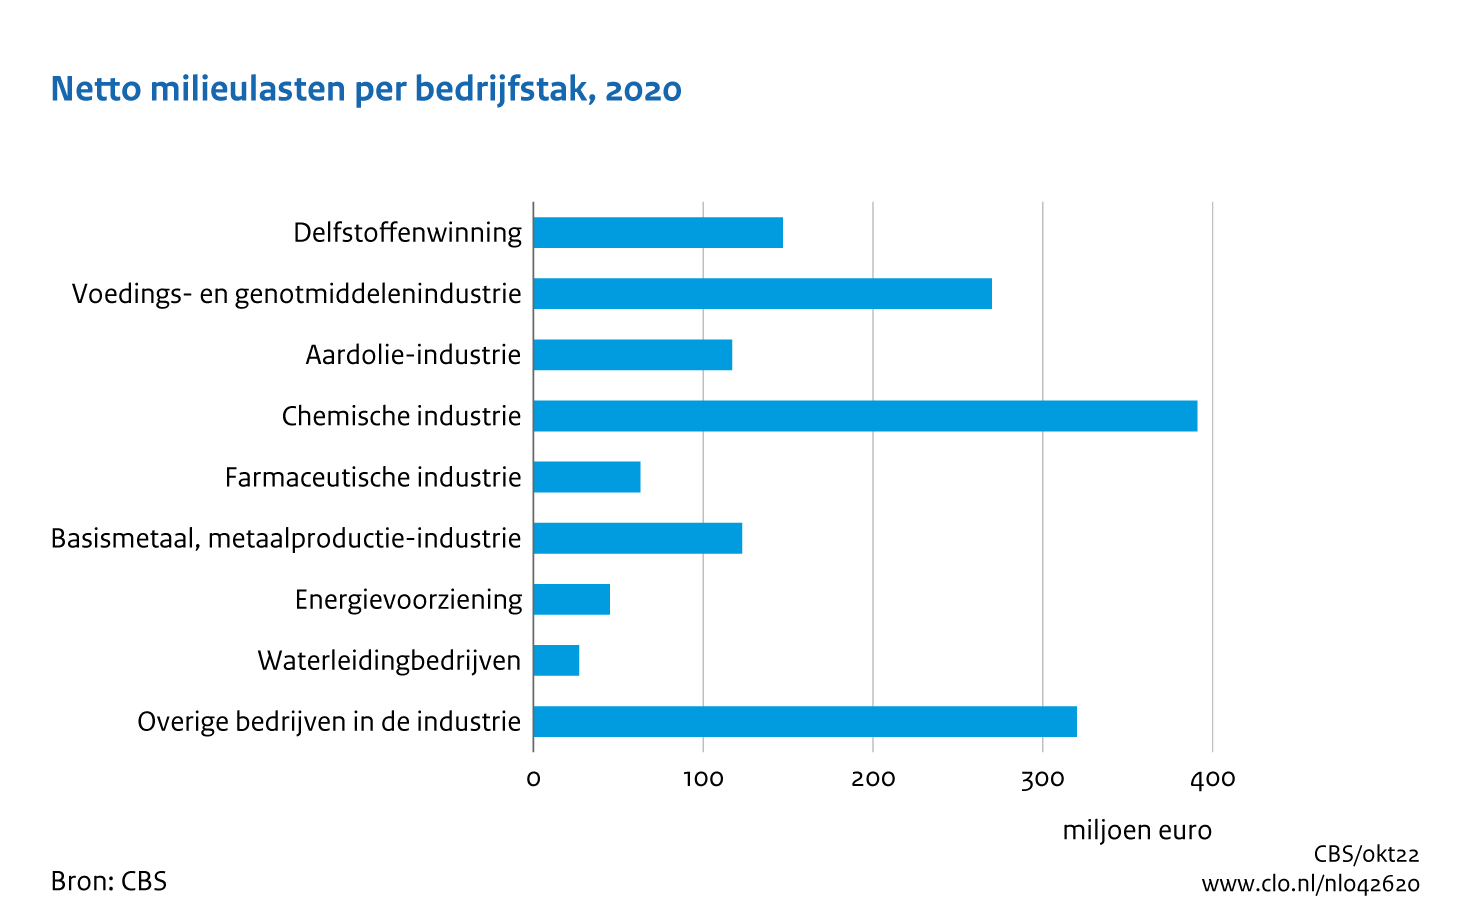 Figuur netto milieulasten naar bedrijfstak 2020. In de rest van de tekst wordt deze figuur uitgebreider uitgelegd.